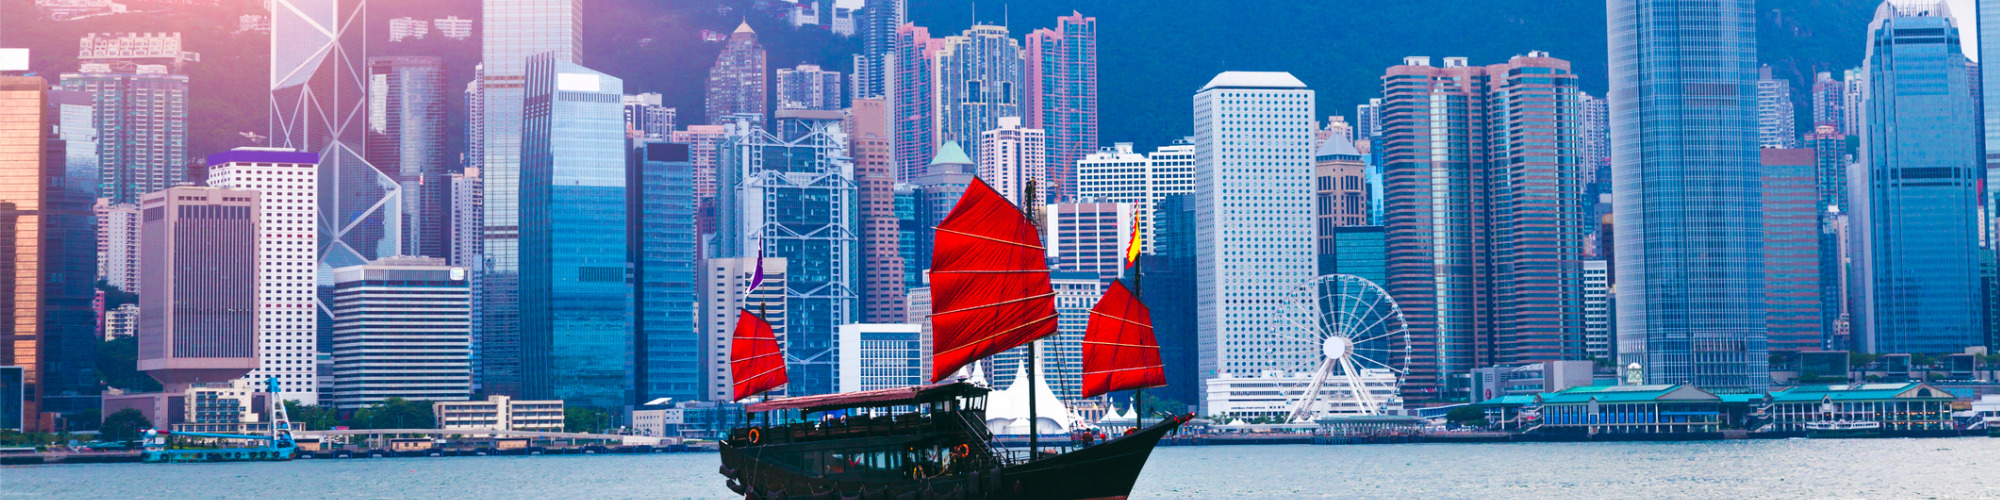 Trading with Hong Kong - A Snapshot